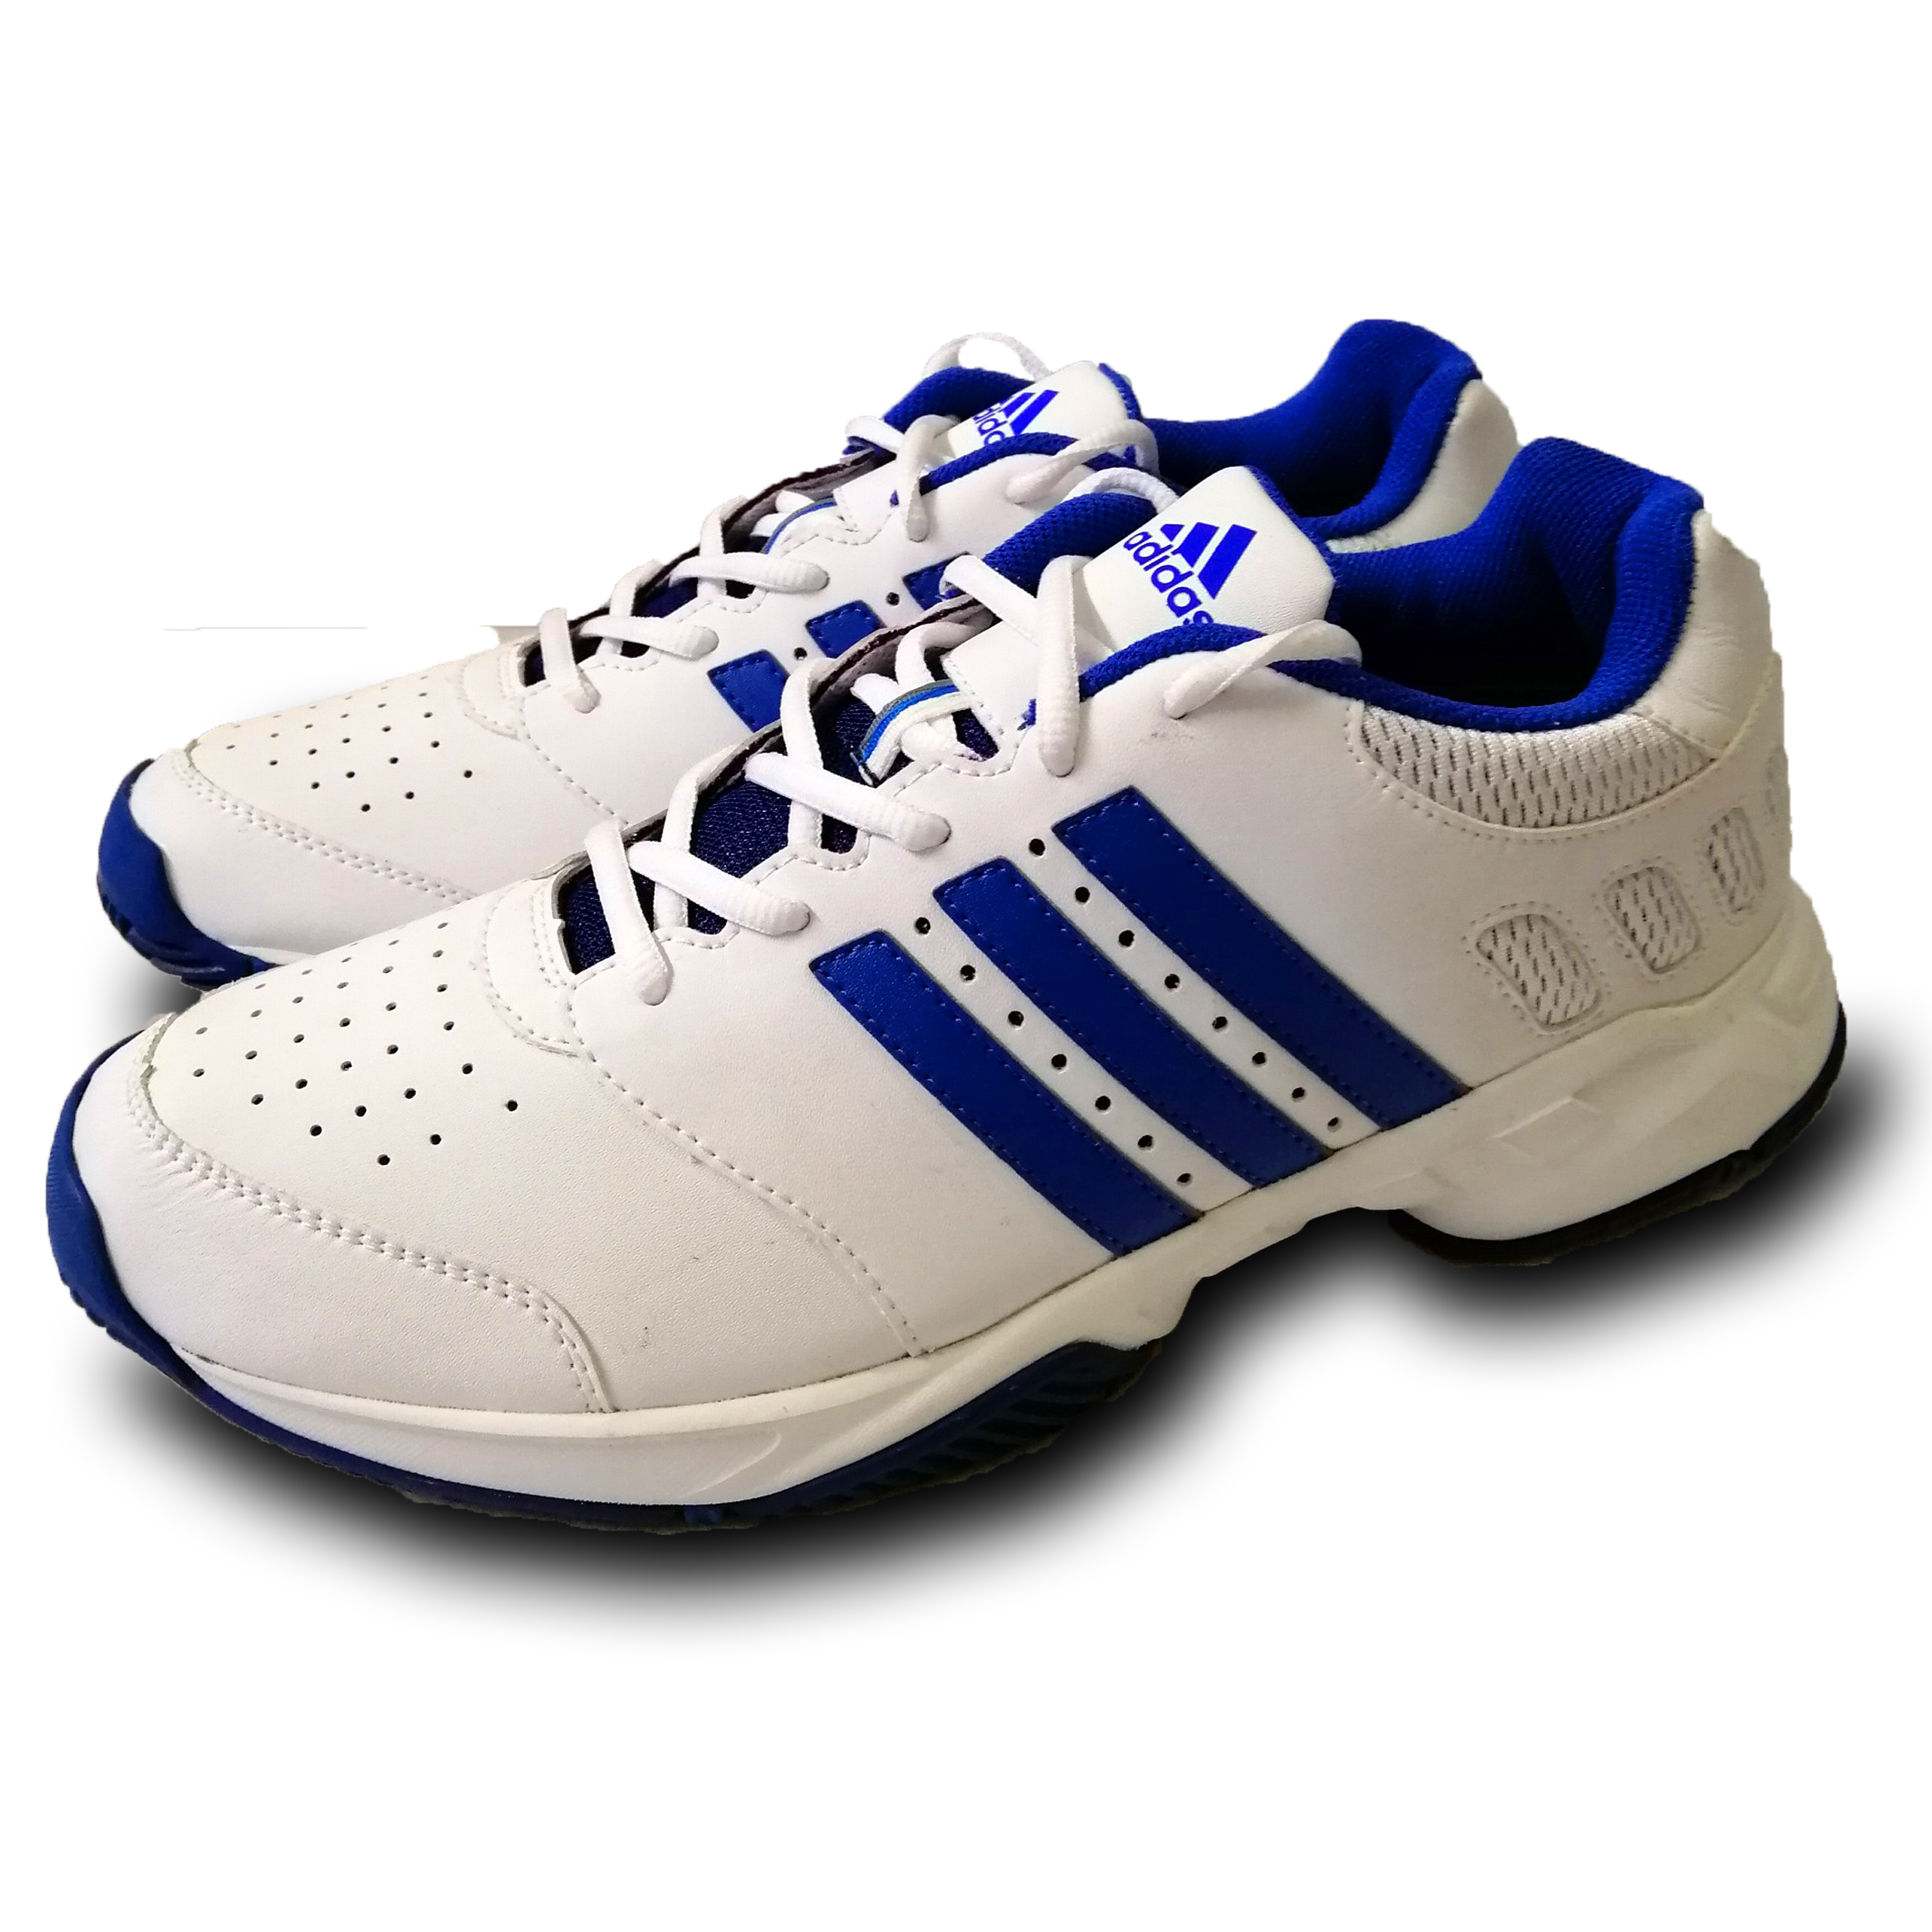 giày tennis adidas trắng 3 sọc xanh